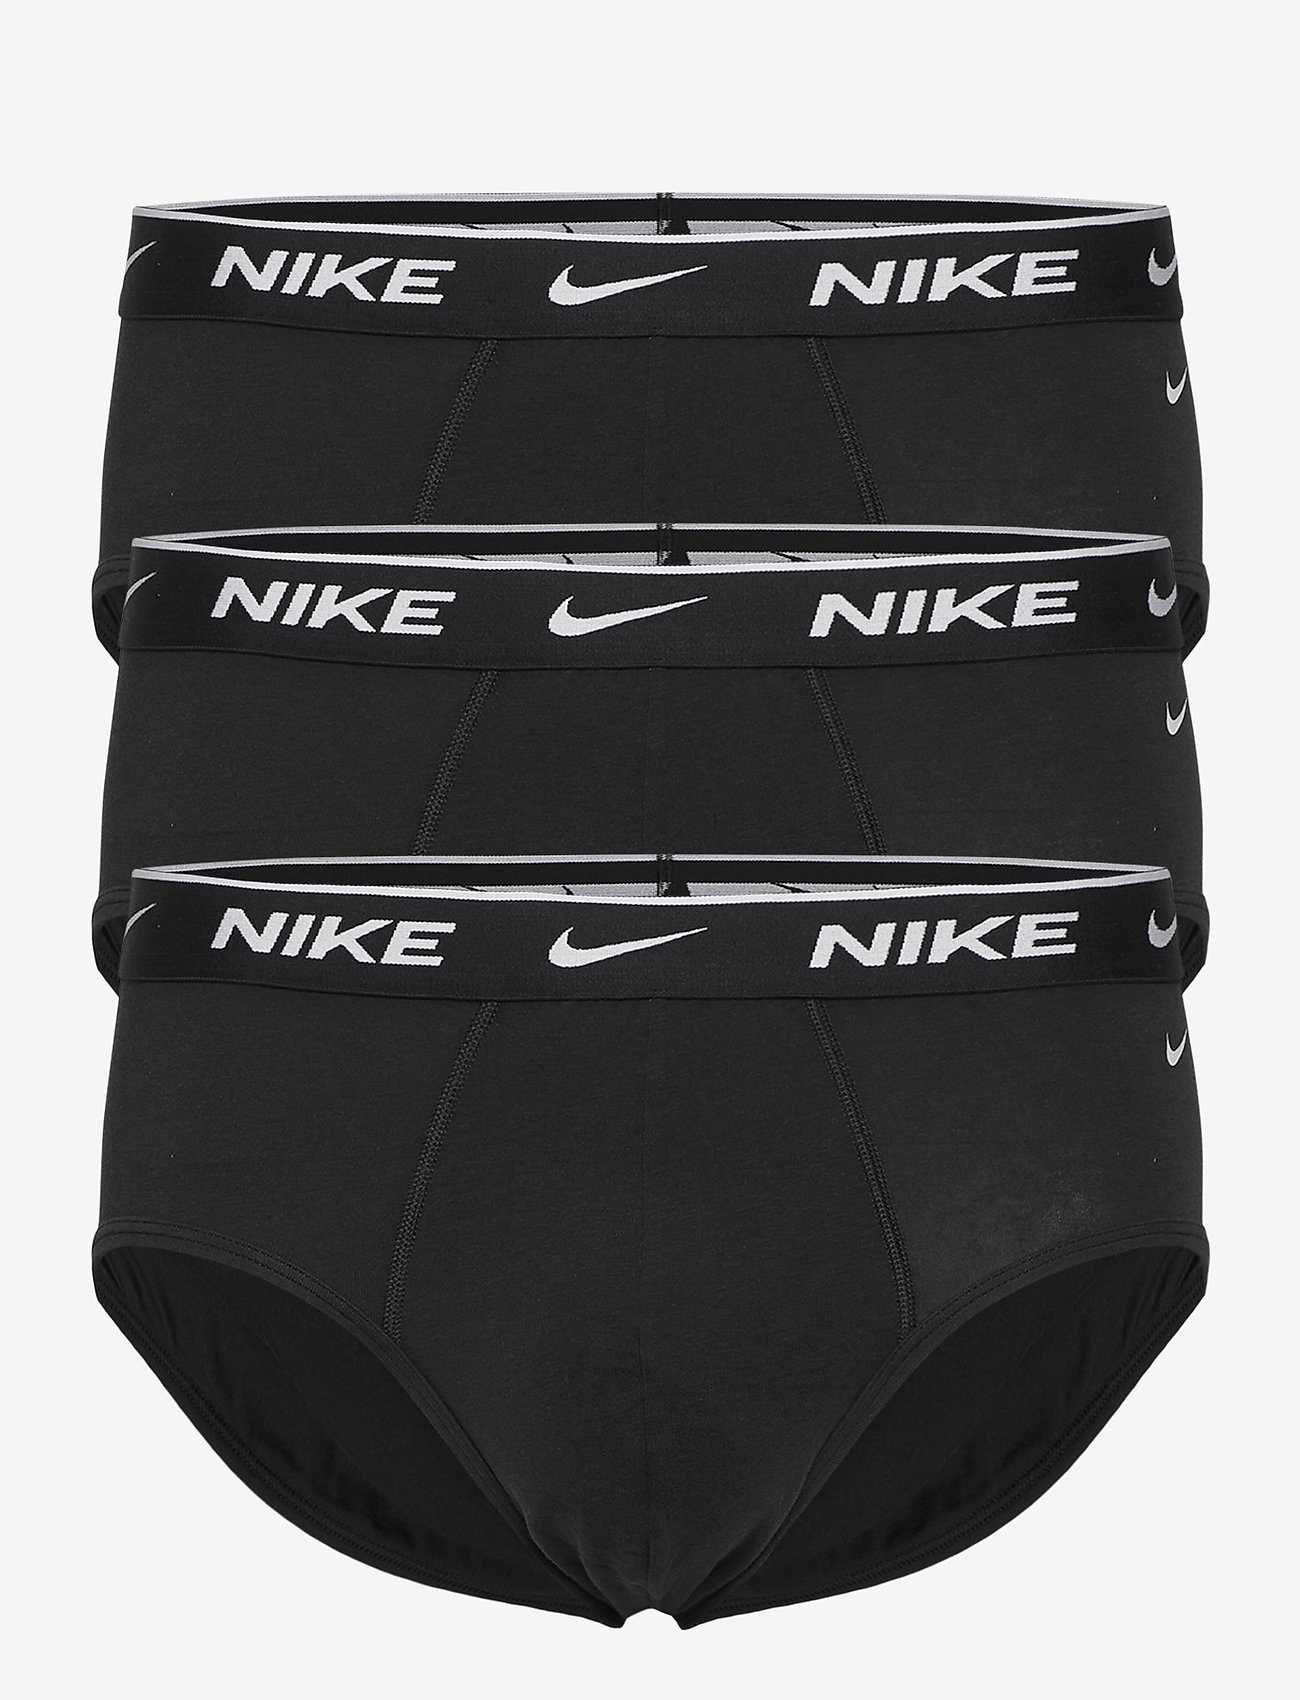 NIKE Underwear - BRIEF 3PK - apatinių komplektas - black - 0